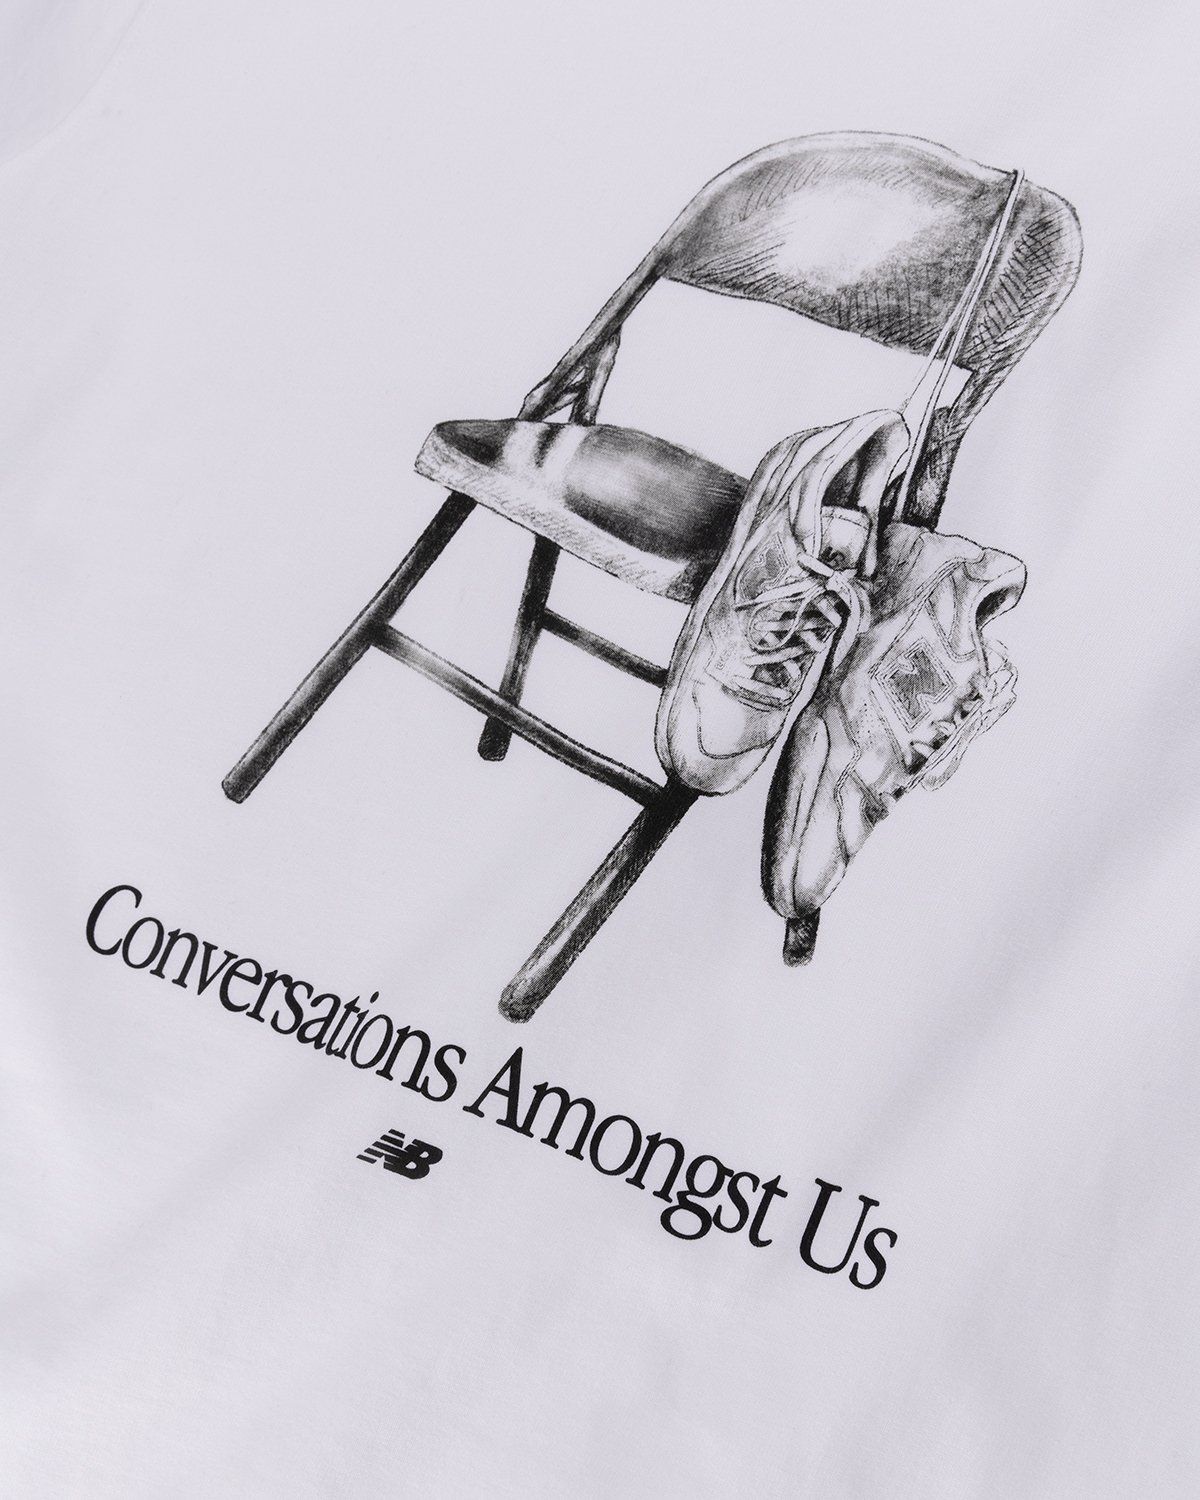 New Balance – Conversations Amongst Us Heavyweight T-Shirt White - T-shirts - White - Image 5